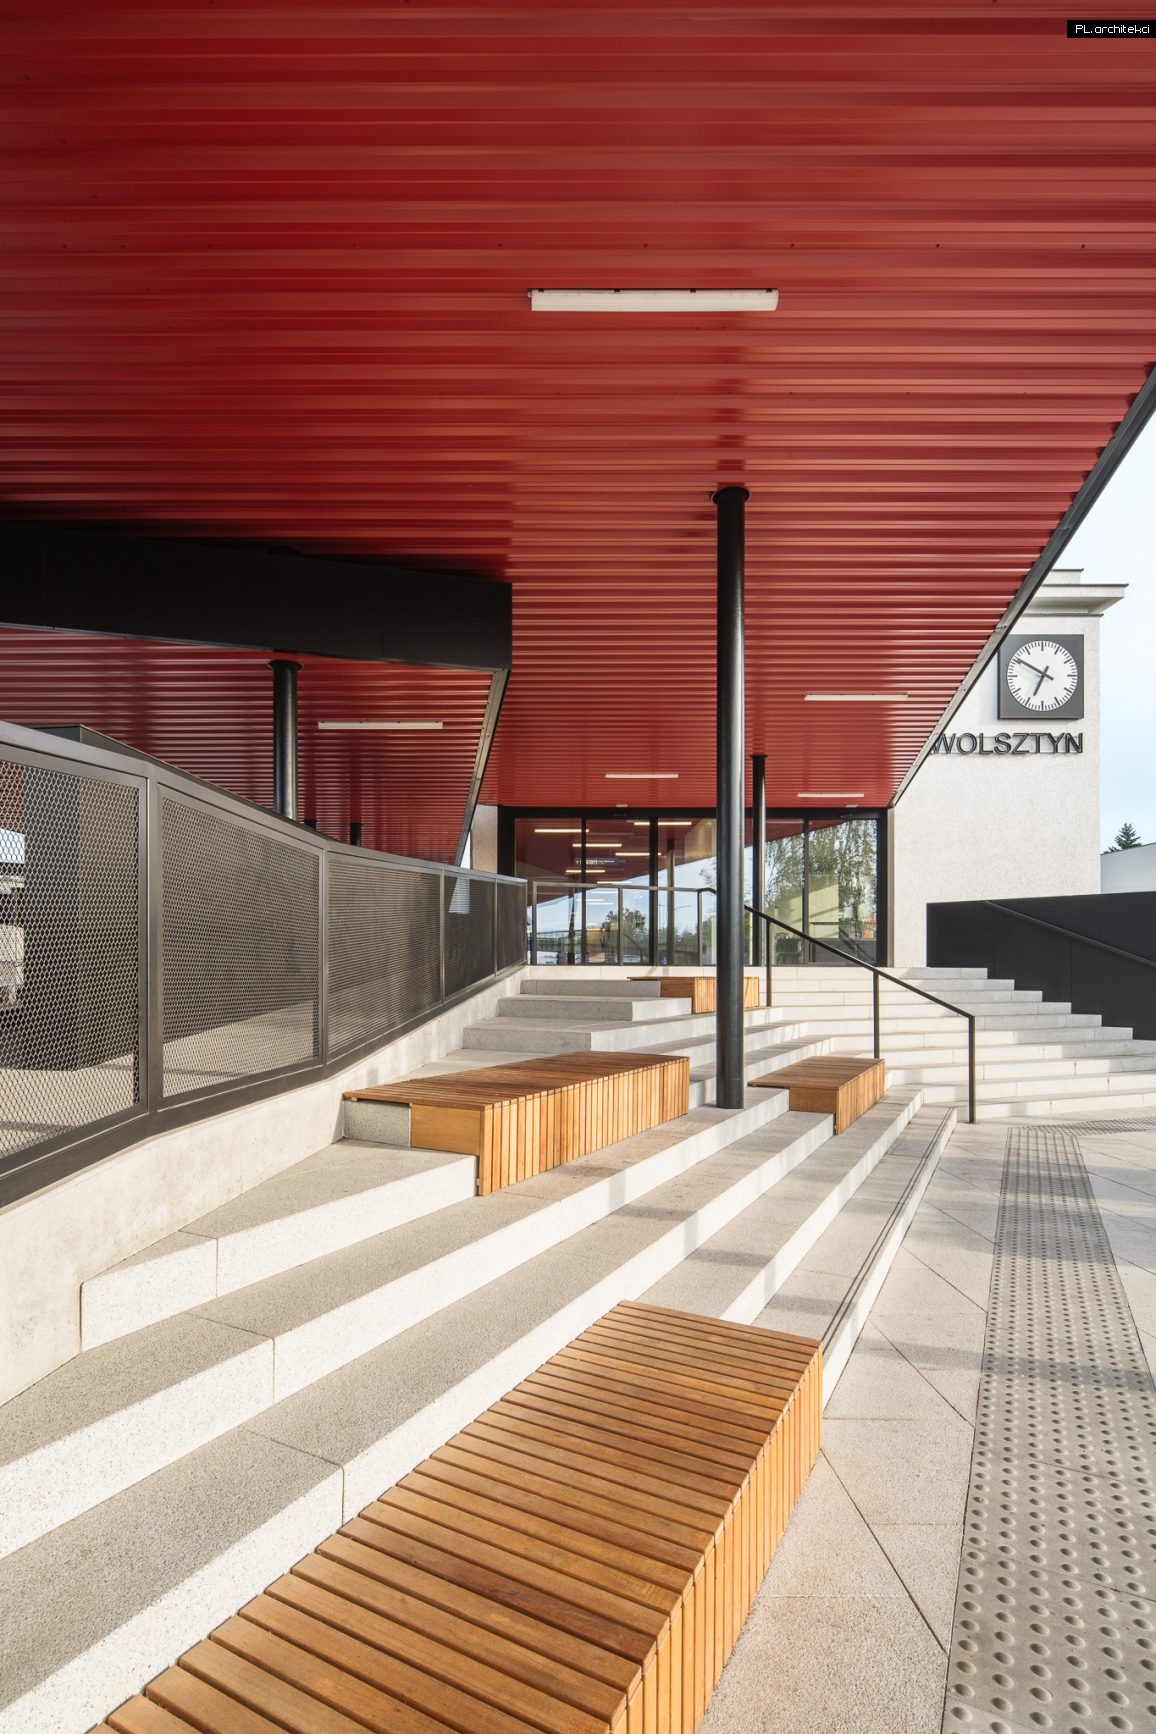 dworzec kolejowy autobusowy nowoczesny przebudowa rozbudowa czarny czerwony wolsztyn plarchitekci